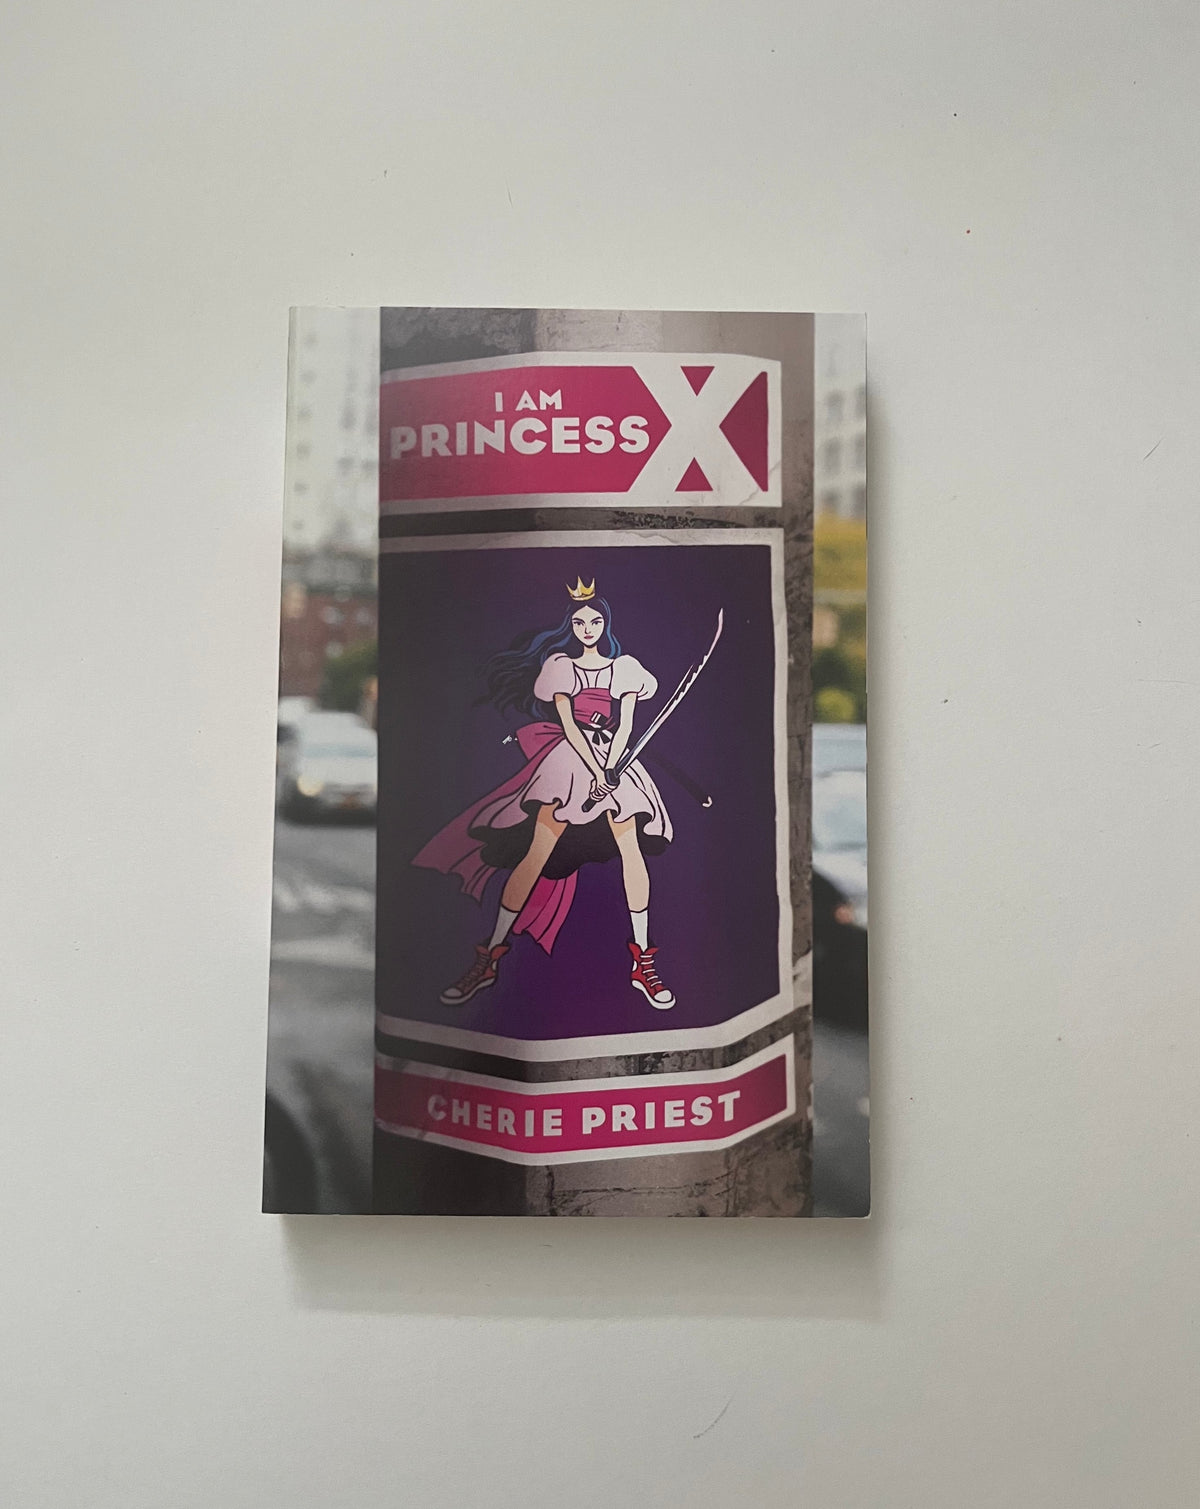 I am Princess X by Cherie Priest